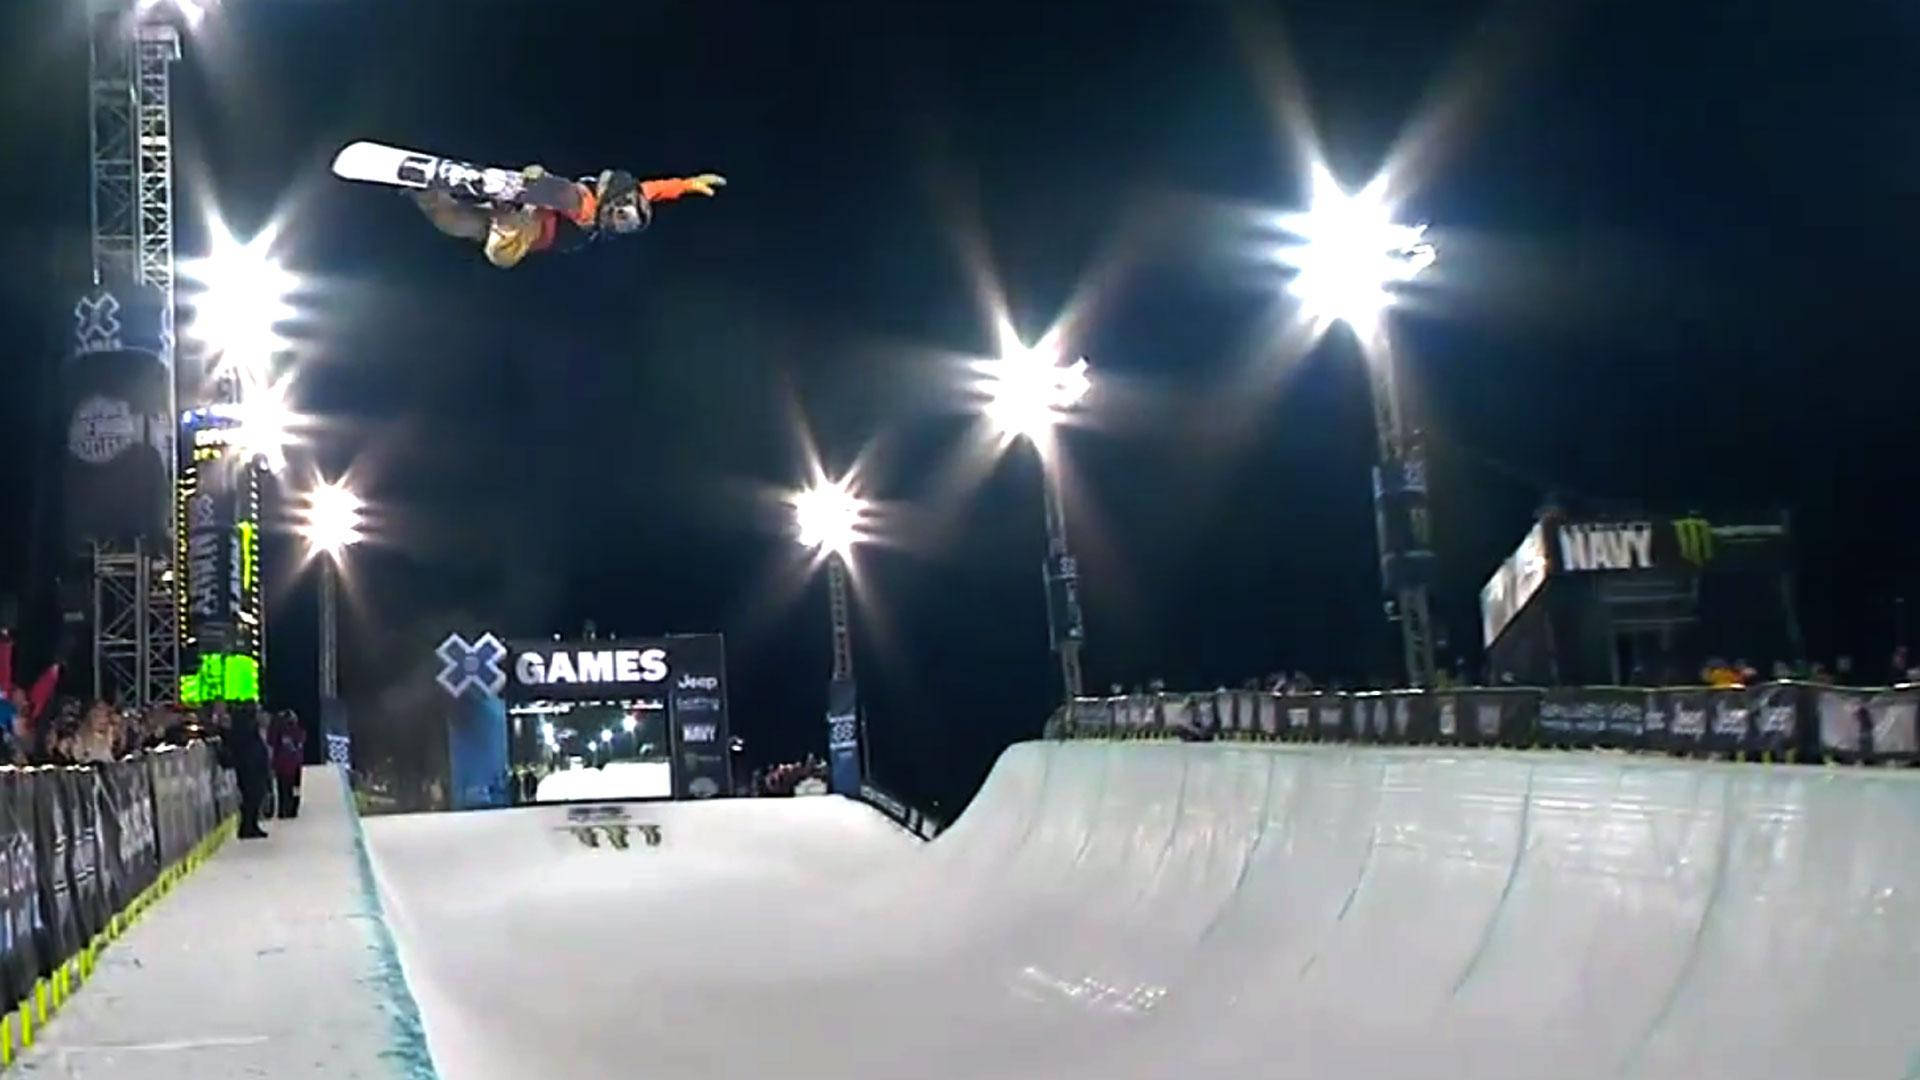 X Games Snowboard Stunt At Night Wallpaper